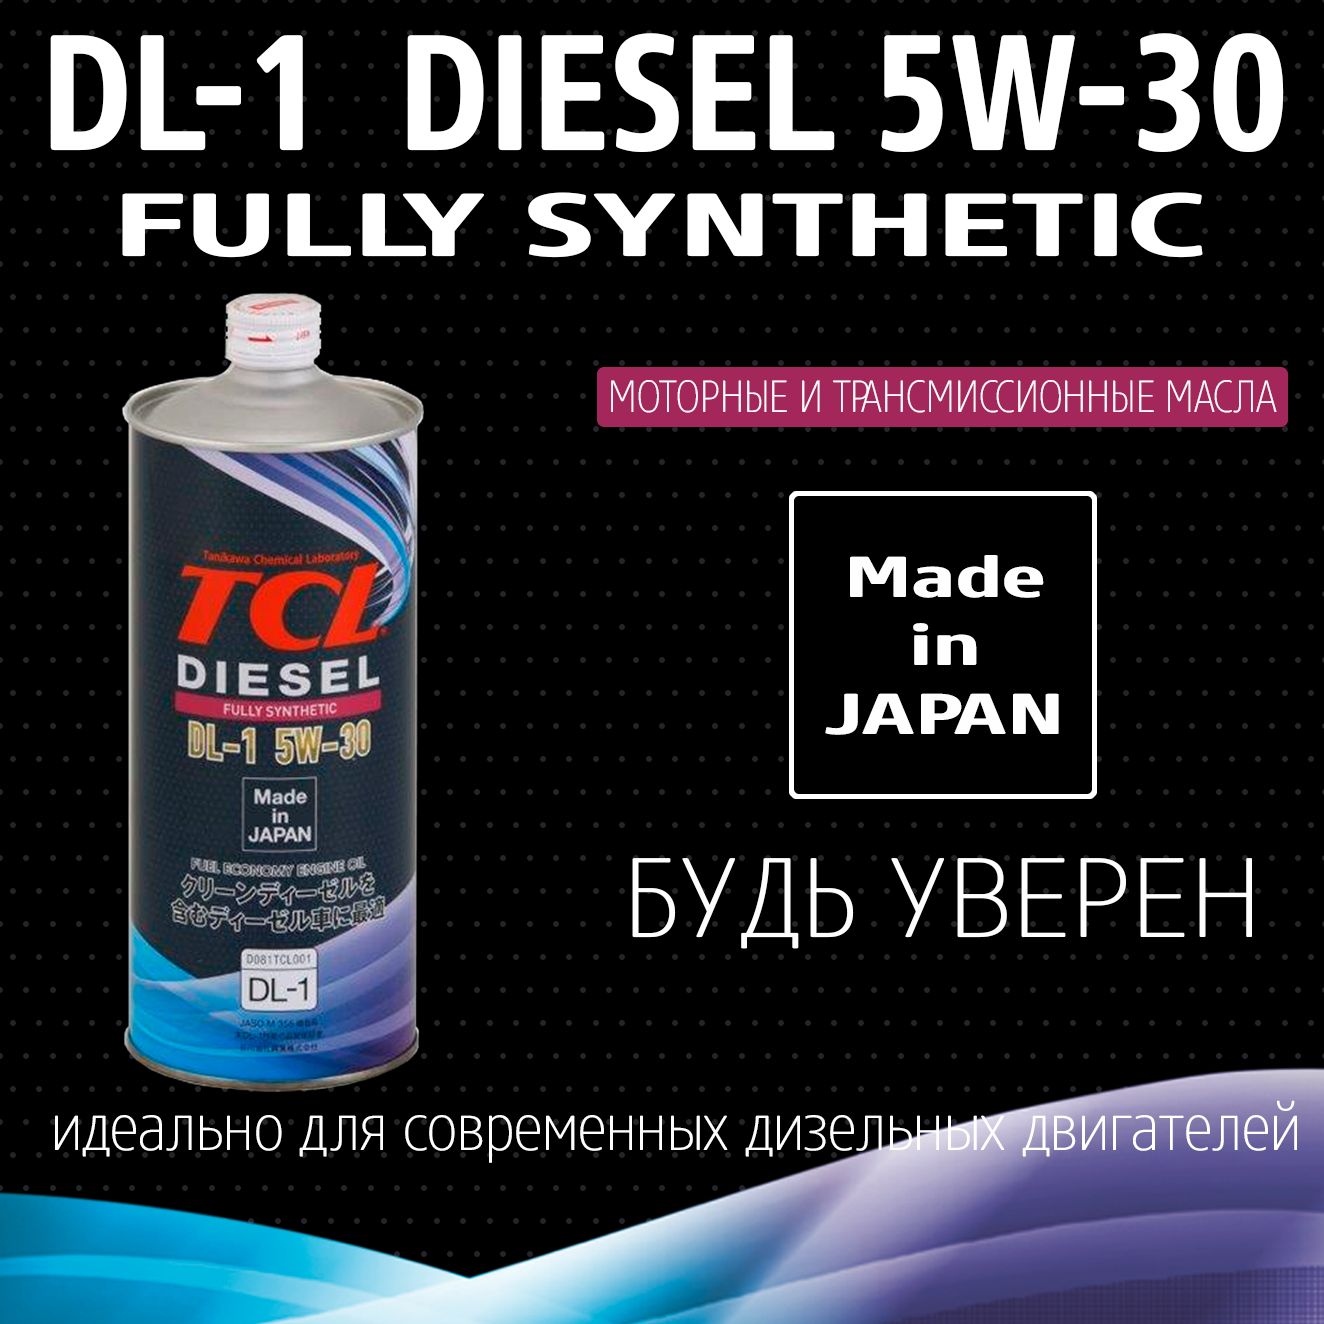 Масло ТСЛ 5в30. TCL масло моторное 5w-30. Масло для дизельных двигателей TCL Diesel, fully Synth, DL-1, 5w30, 1л. Моторное масло TCL 5w-30 DL-1. Моторное масло tcl 5w30